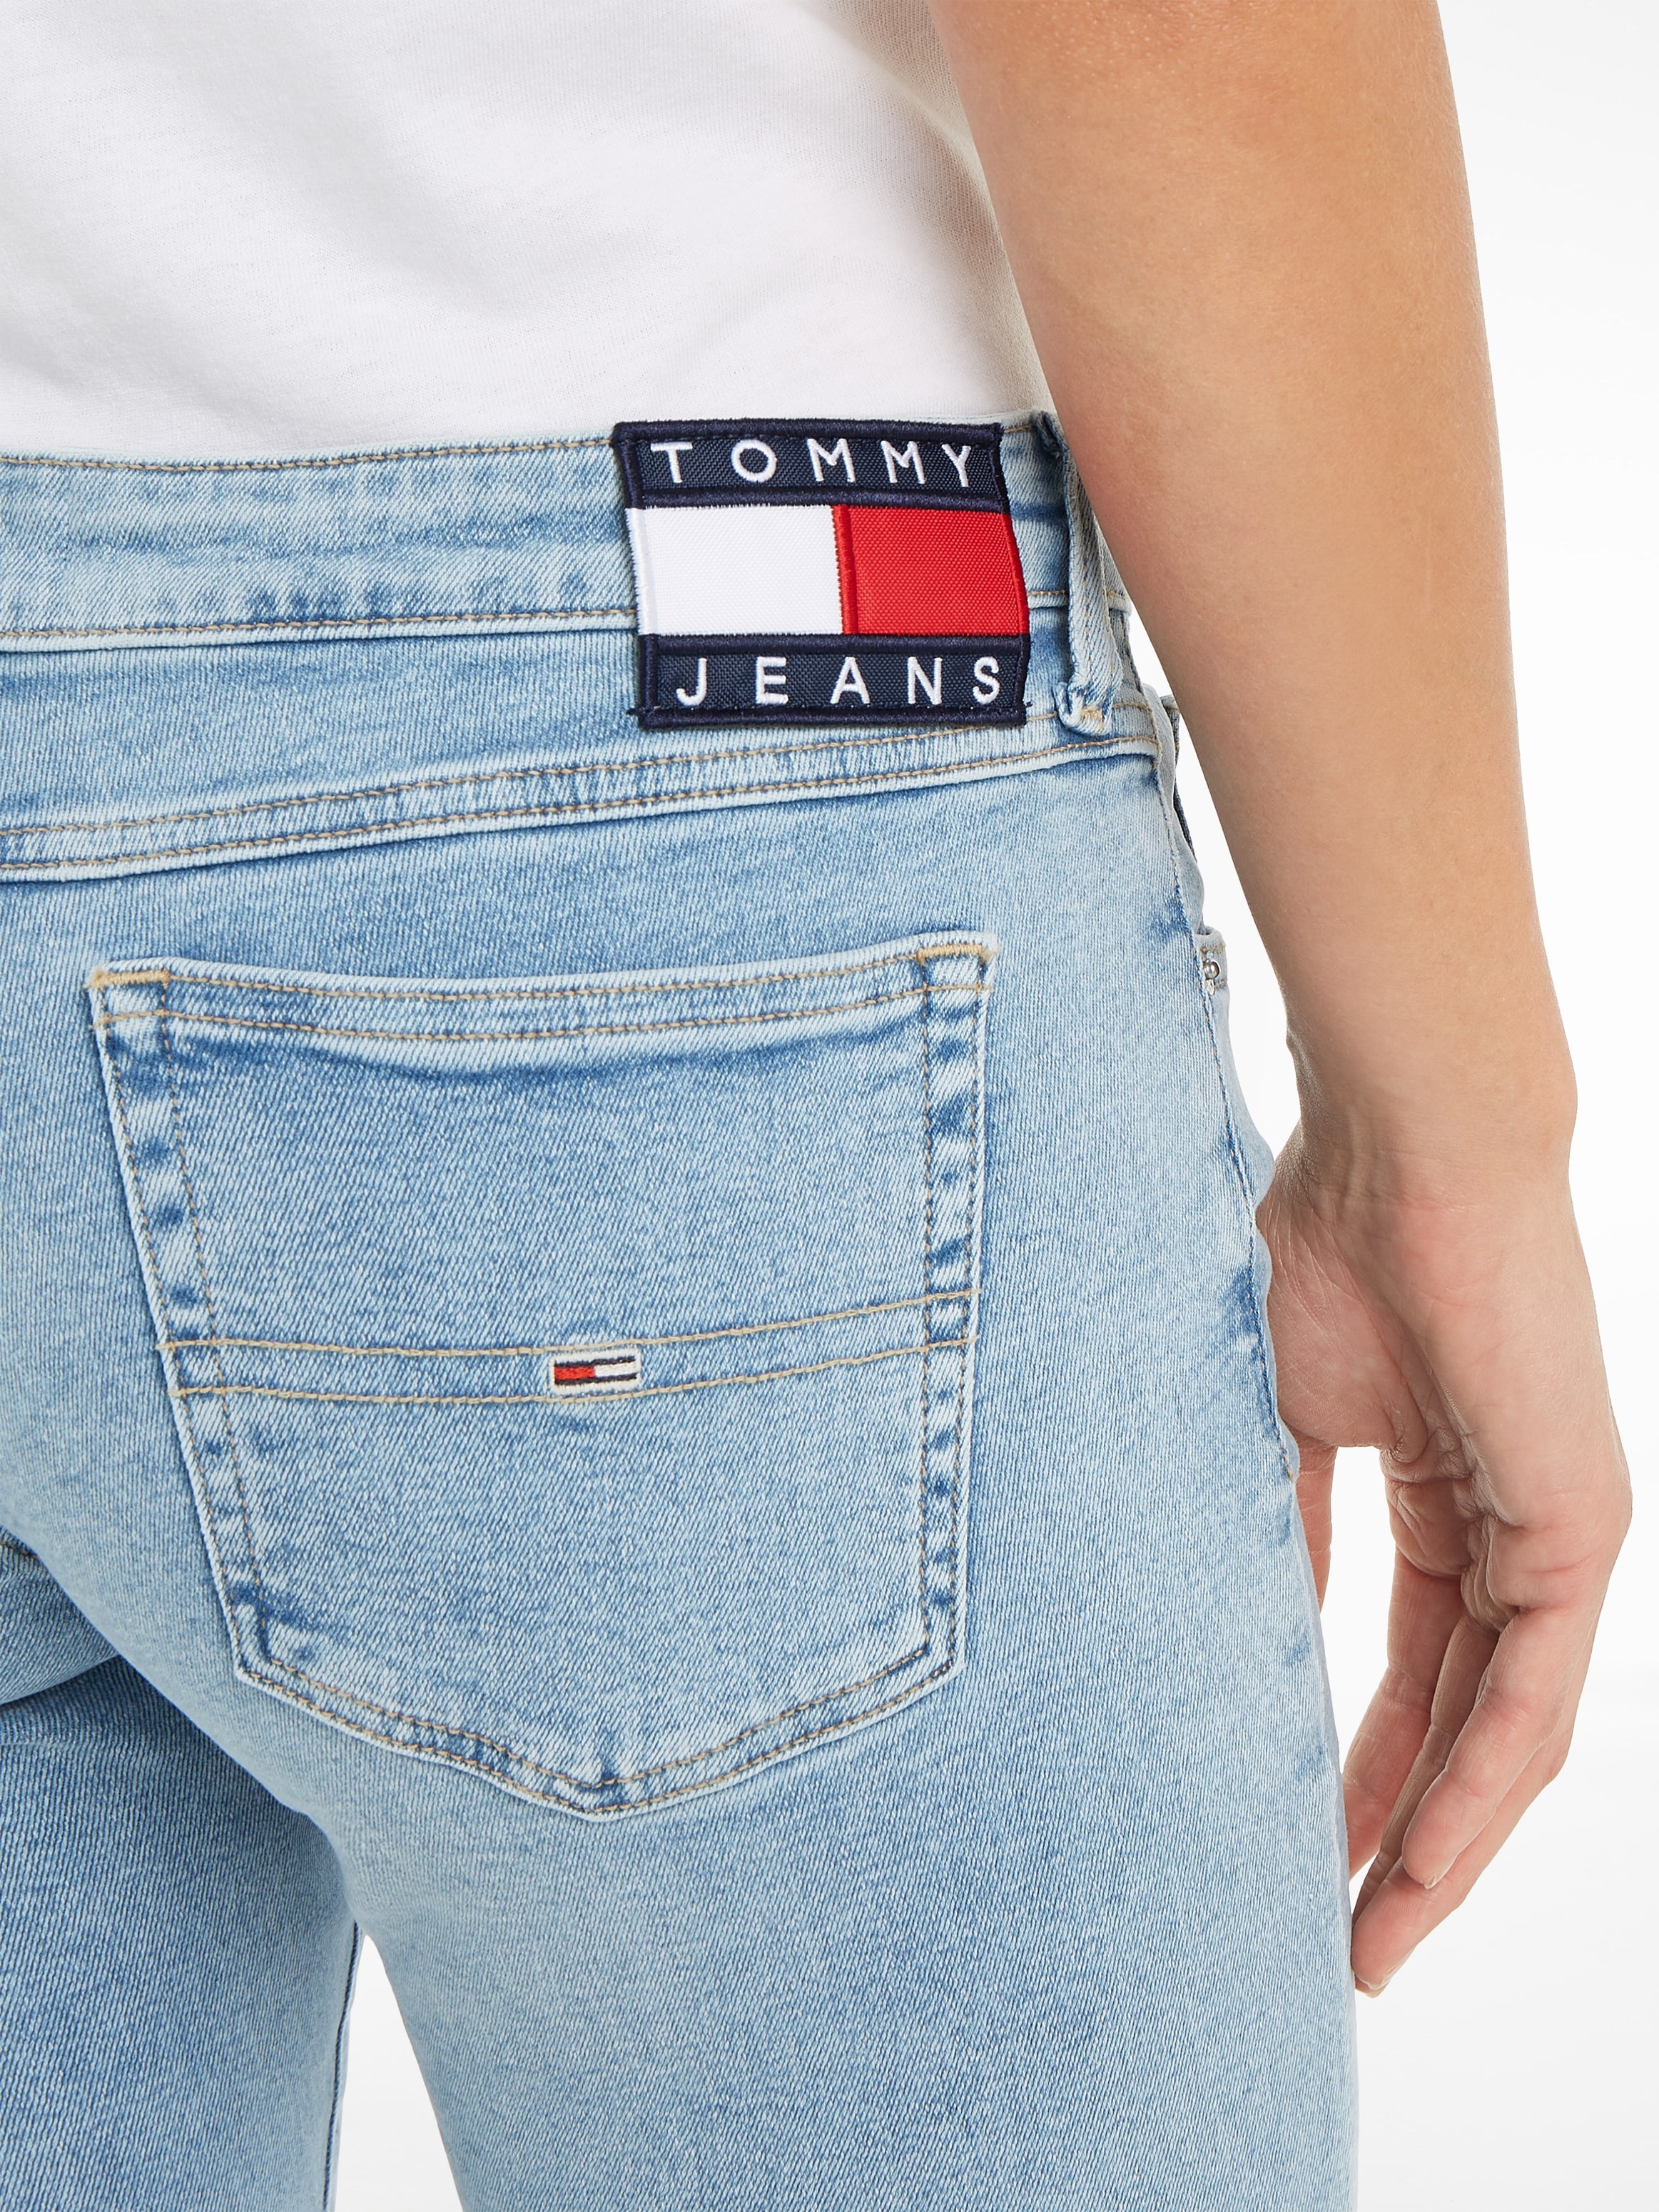 Tommy Jeans Labelapplikationen mit dezenten Skinny-fit-Jeans, ♕ bei